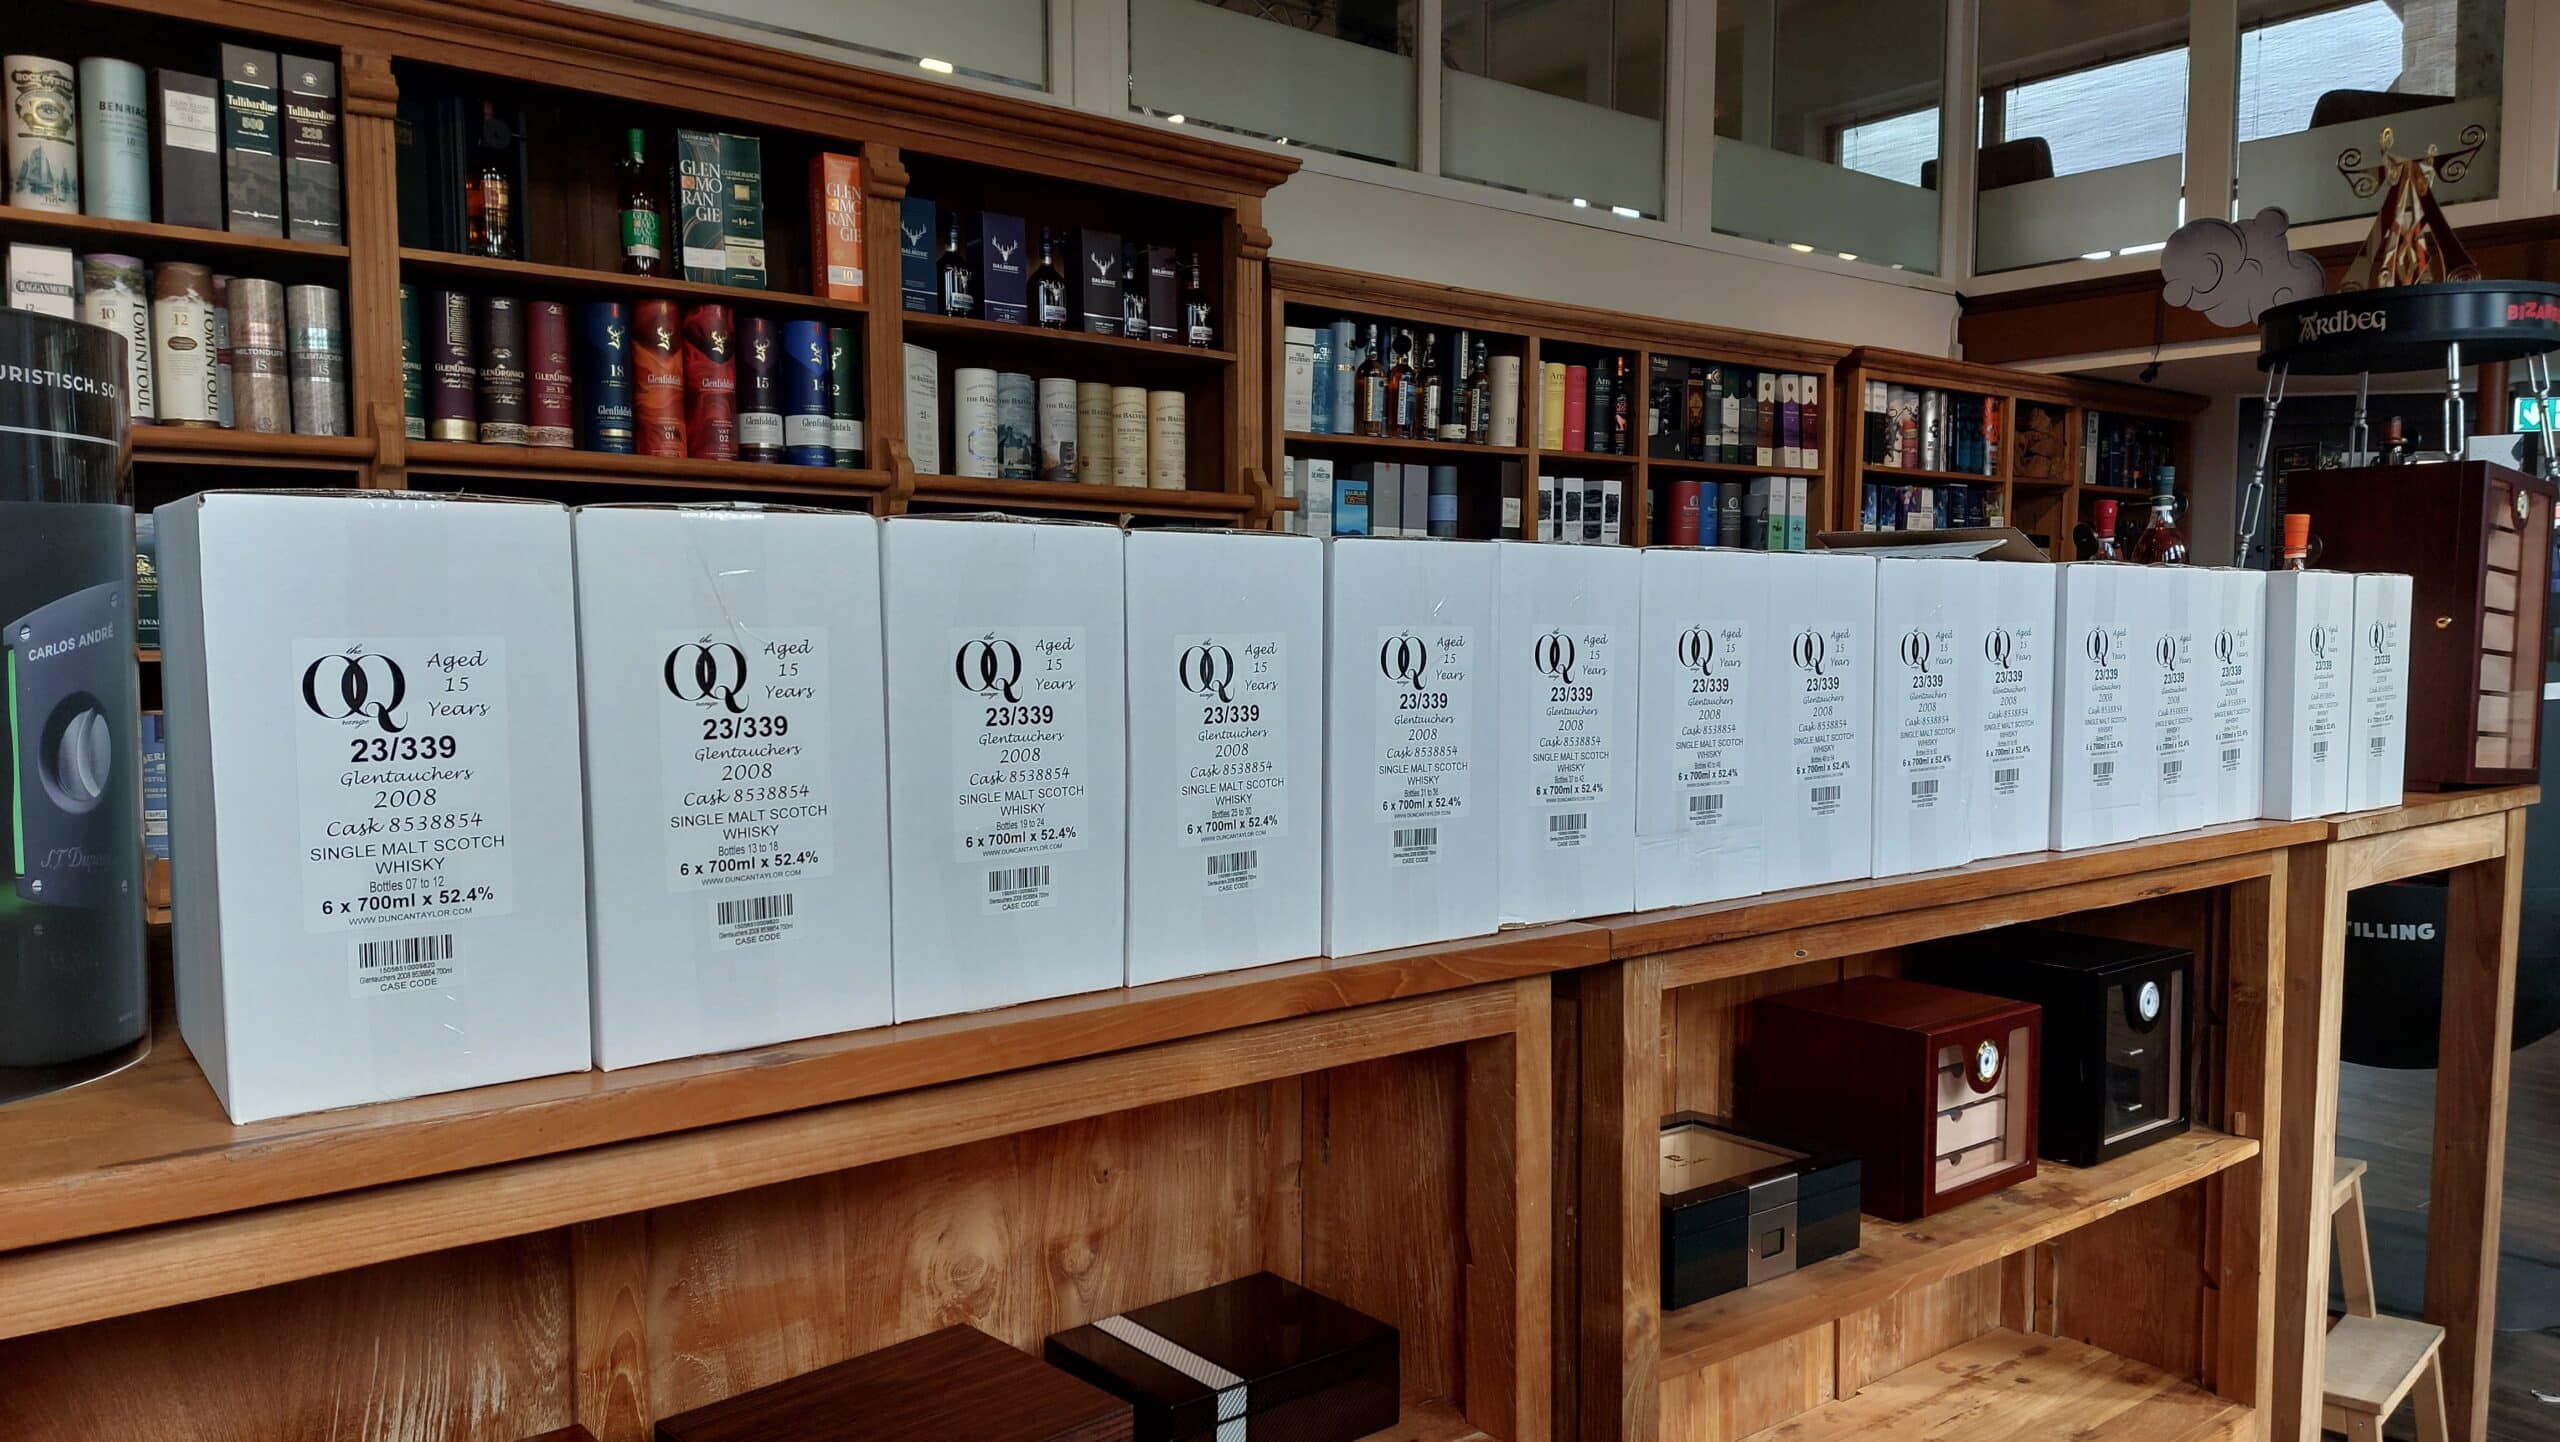 92 Flaschen Single Malt Glentauchers, 15 Jahre gereift, exklusiv für whisky & cigar salon.